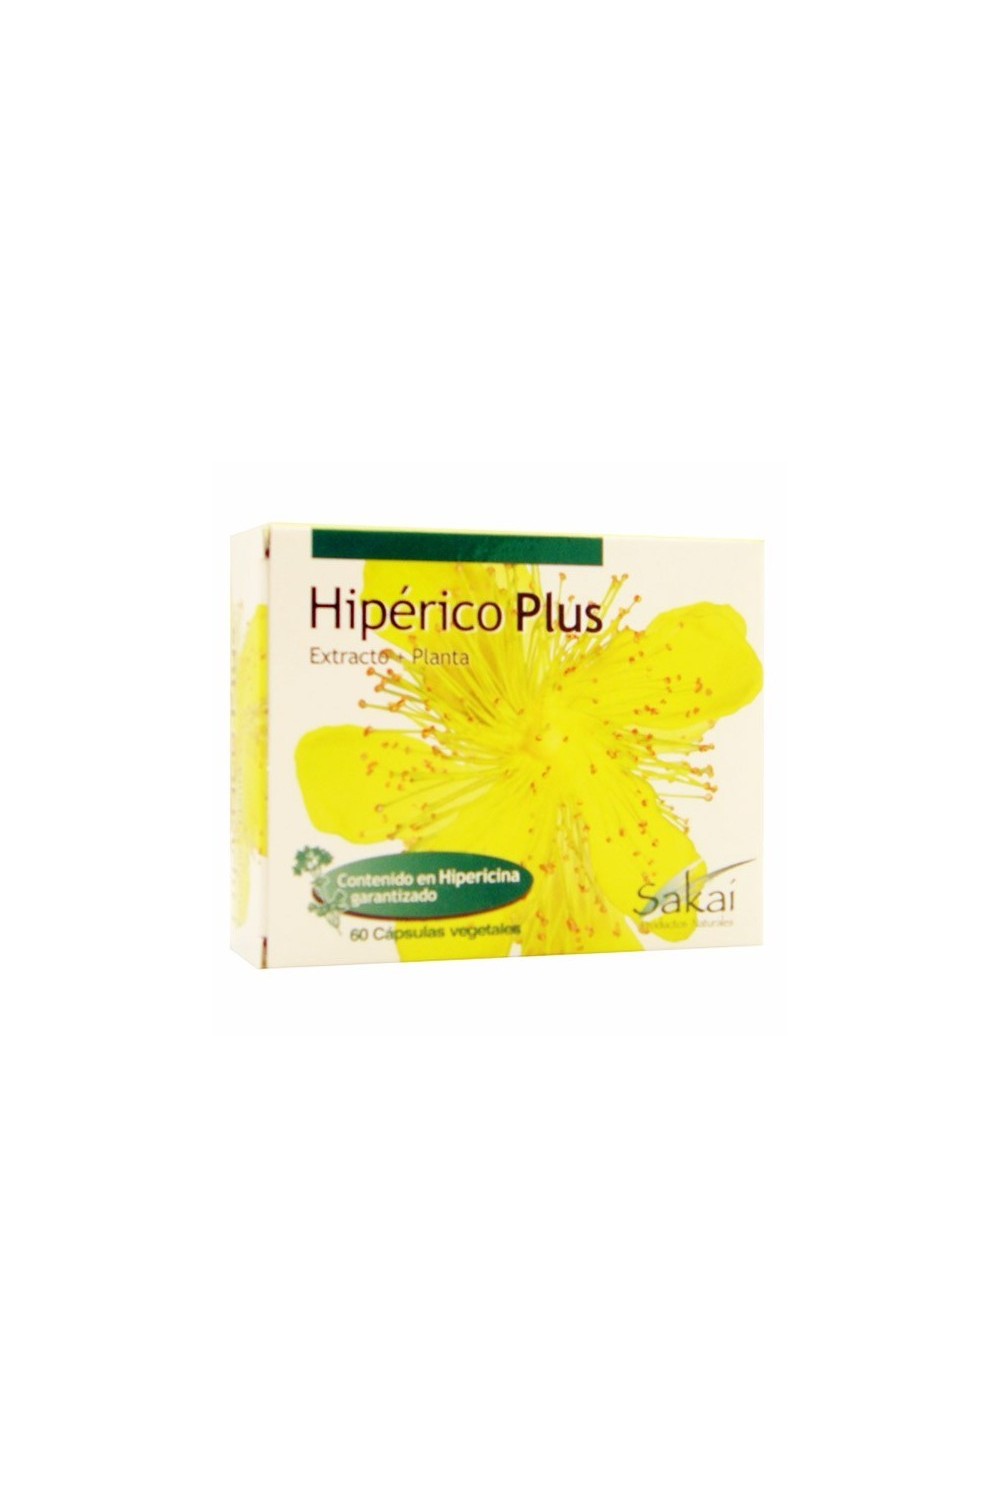 Sakai Hiperico Plus 60 Vcaps